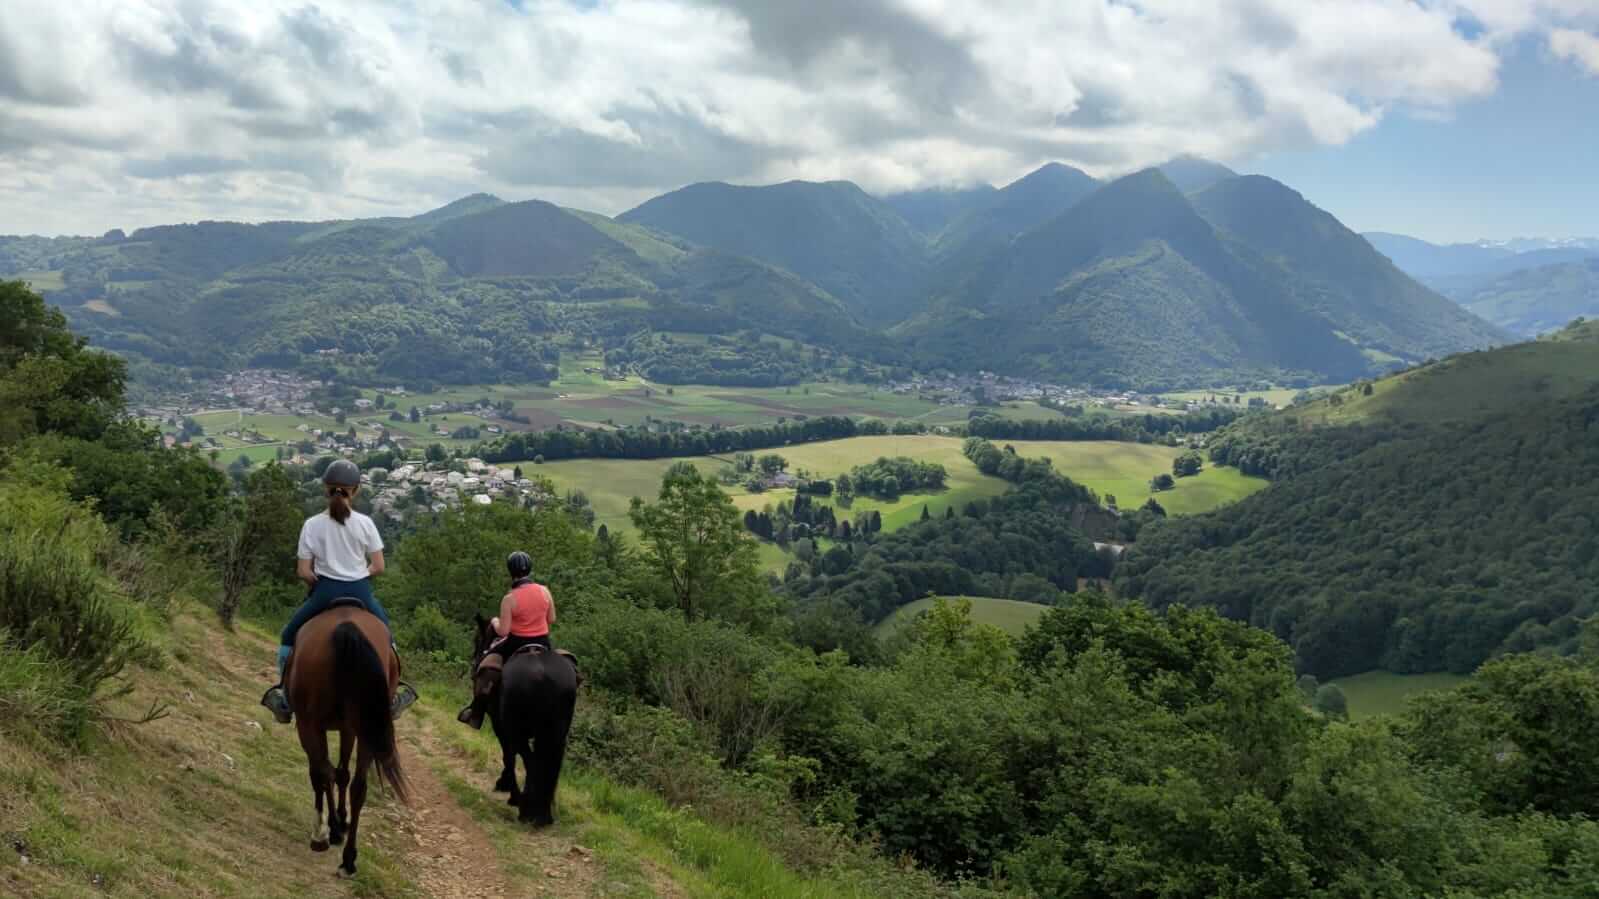 randonneurs à cheval observe le panorama pyrénéen